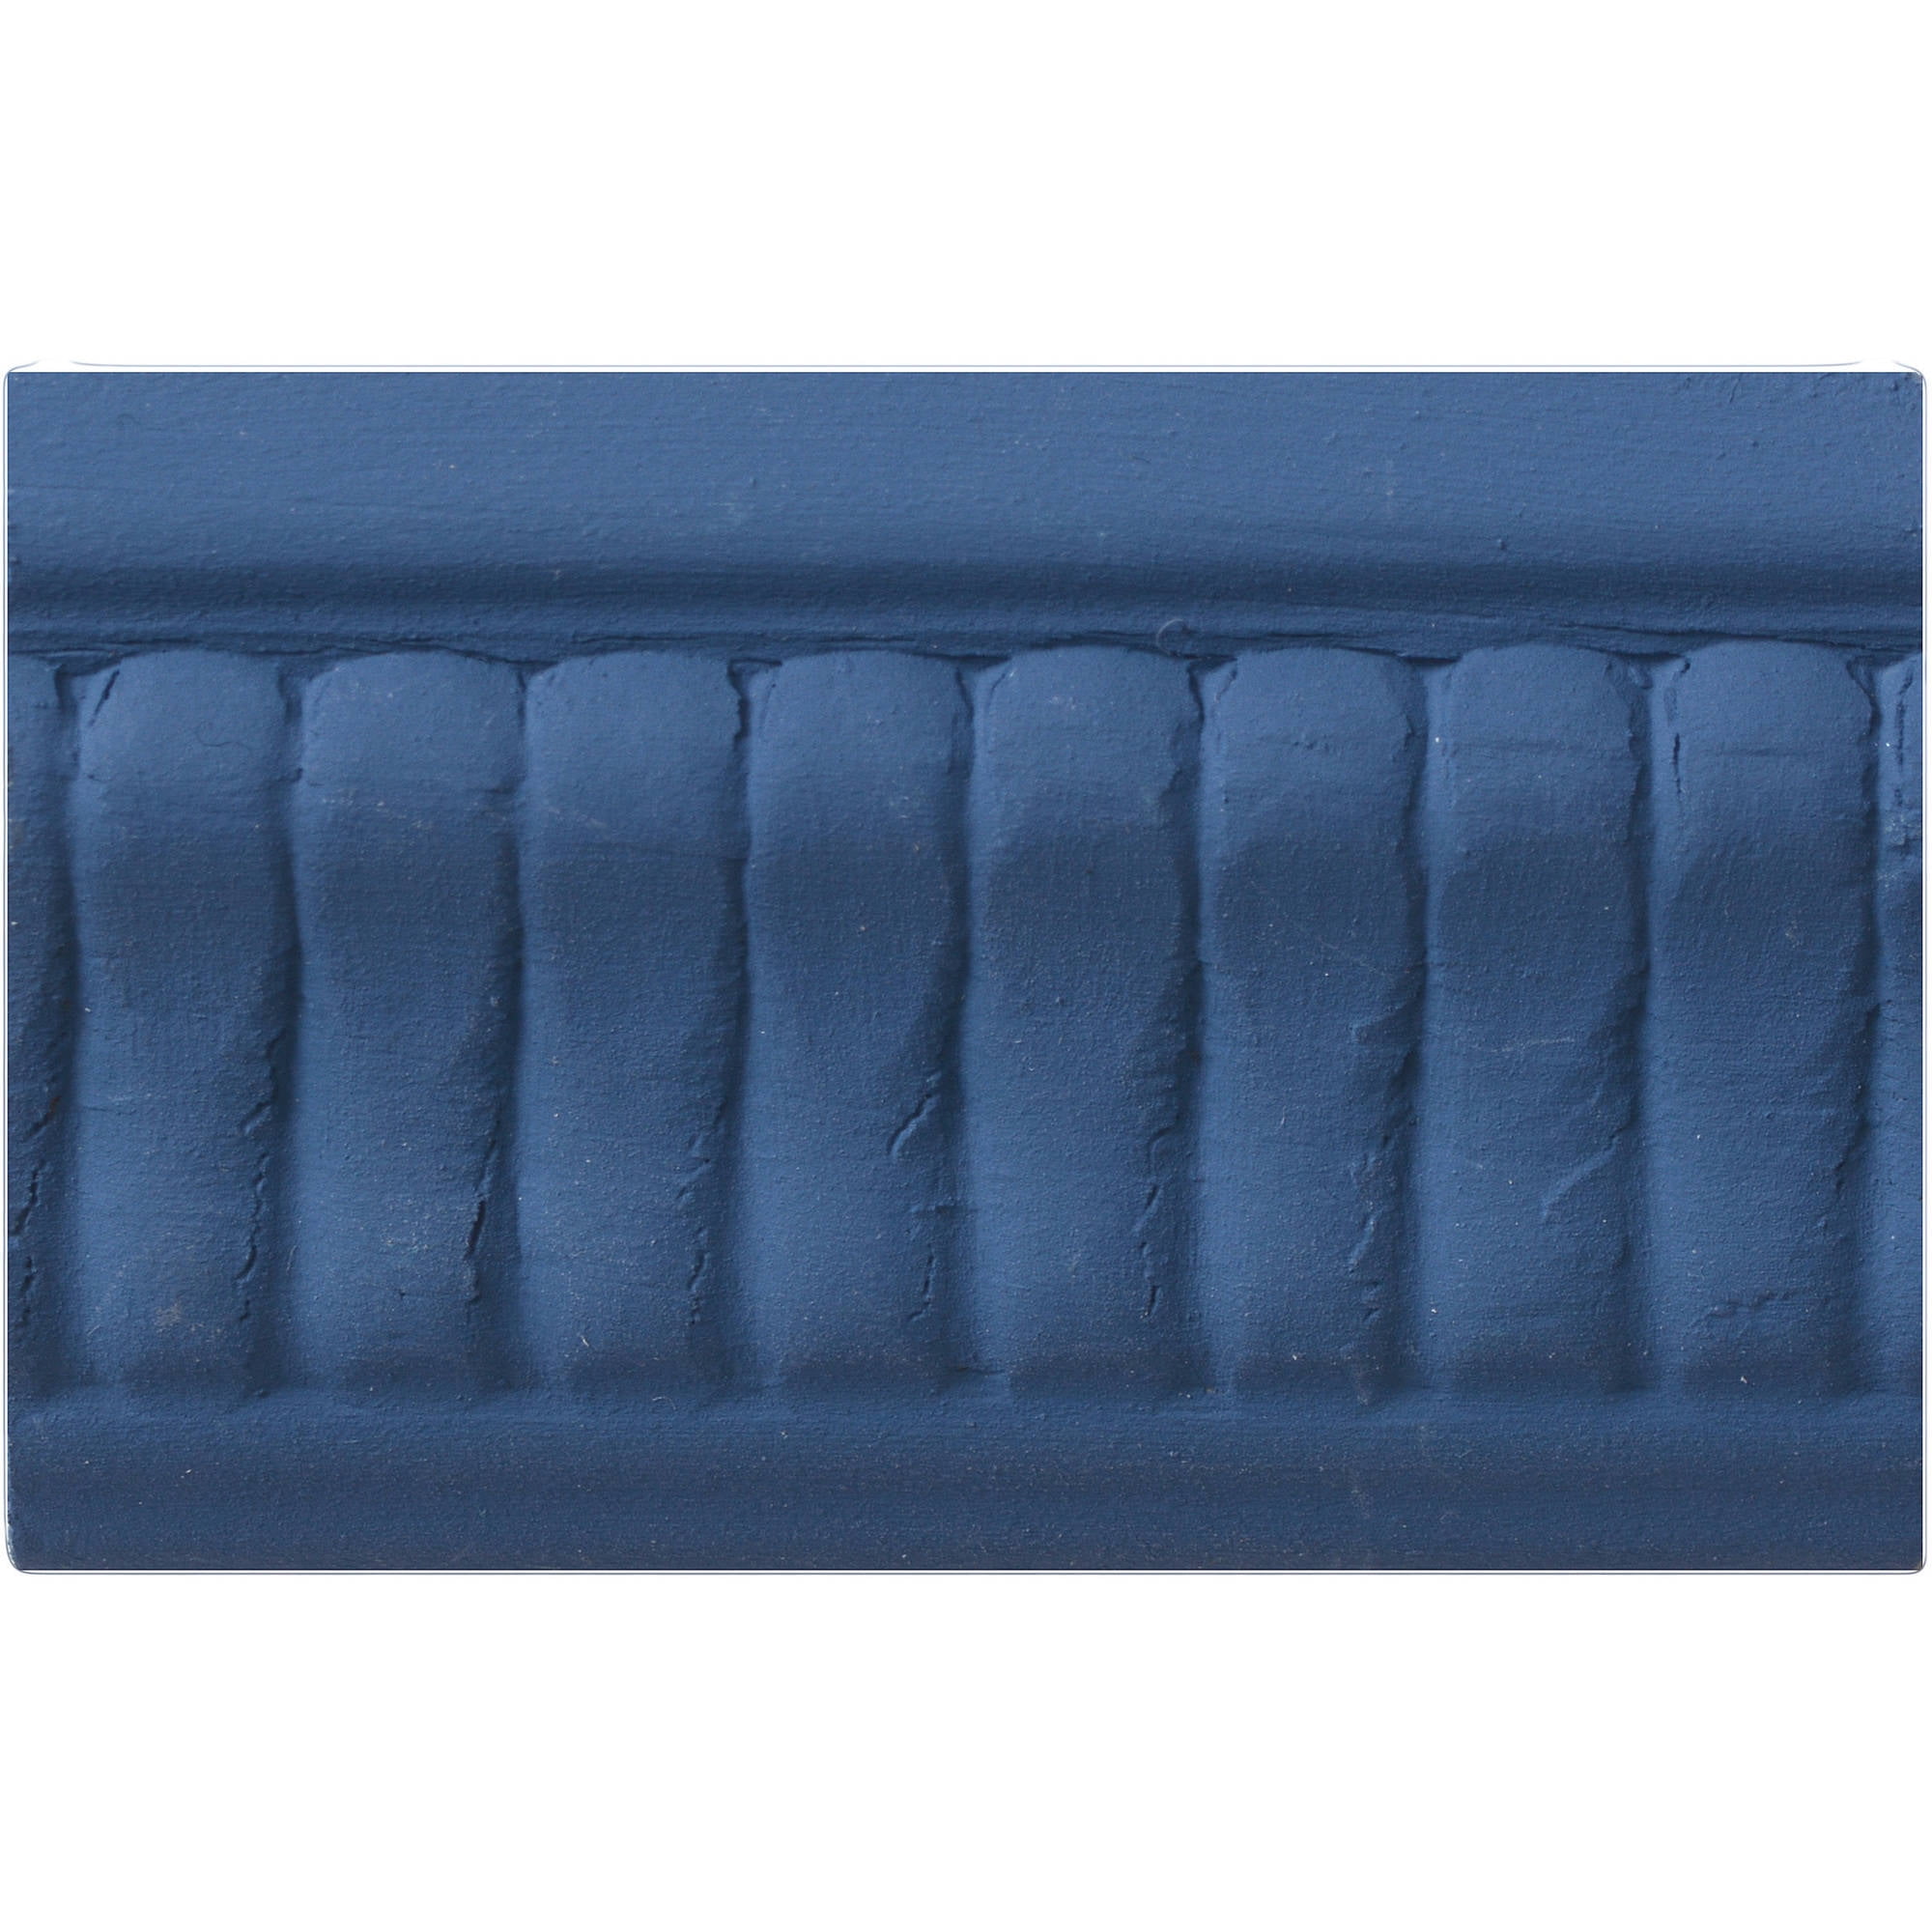 Redesign Chalk Paste® 3.4 fl. oz. (100ml) - Buxton Blue